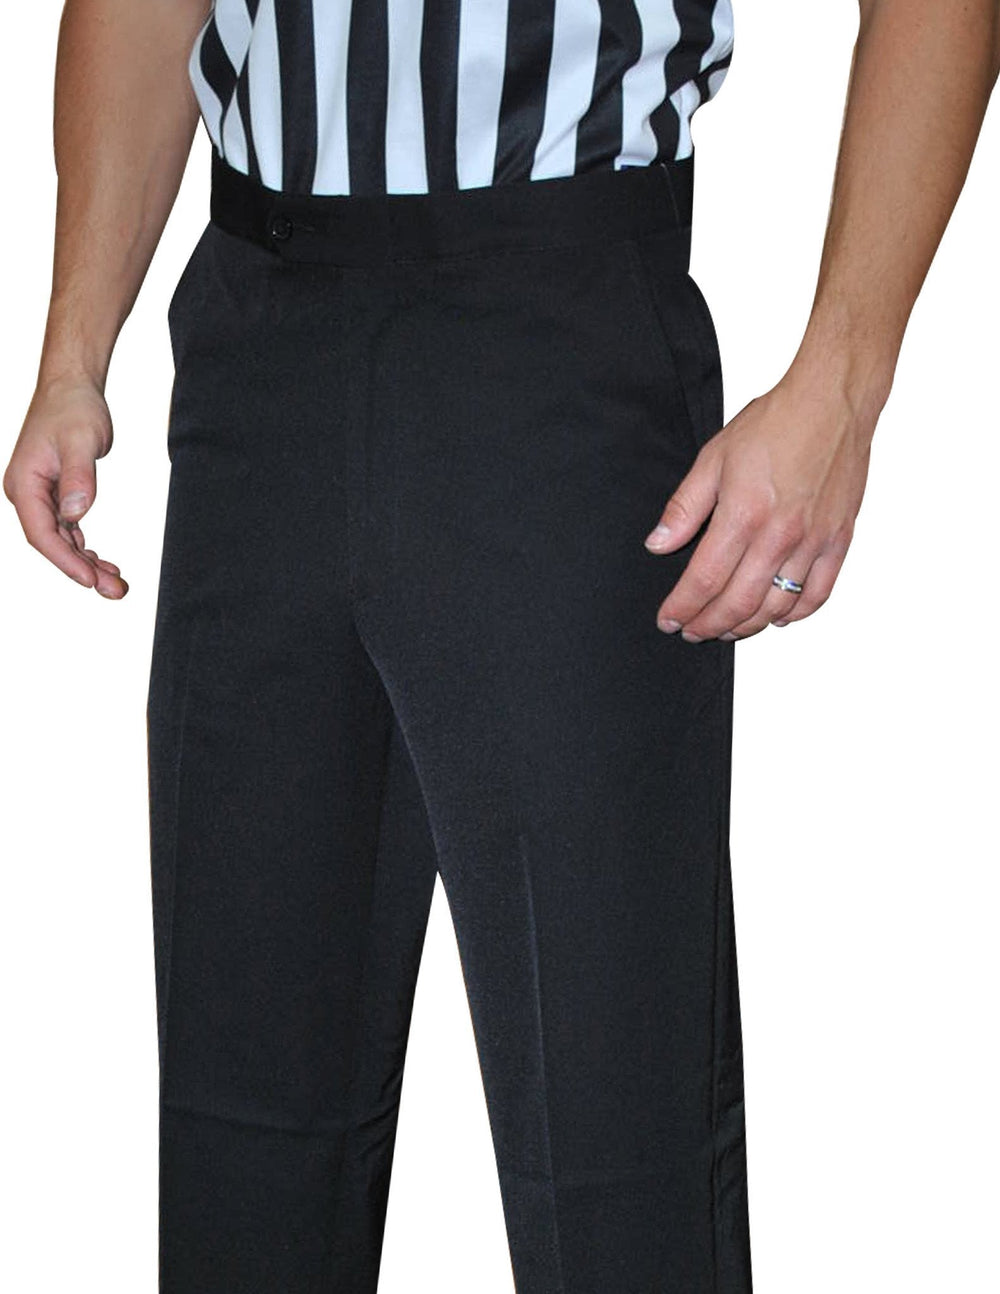 Smitty 4-Way Stretch Flat Front Pants w/ Slash Pockets